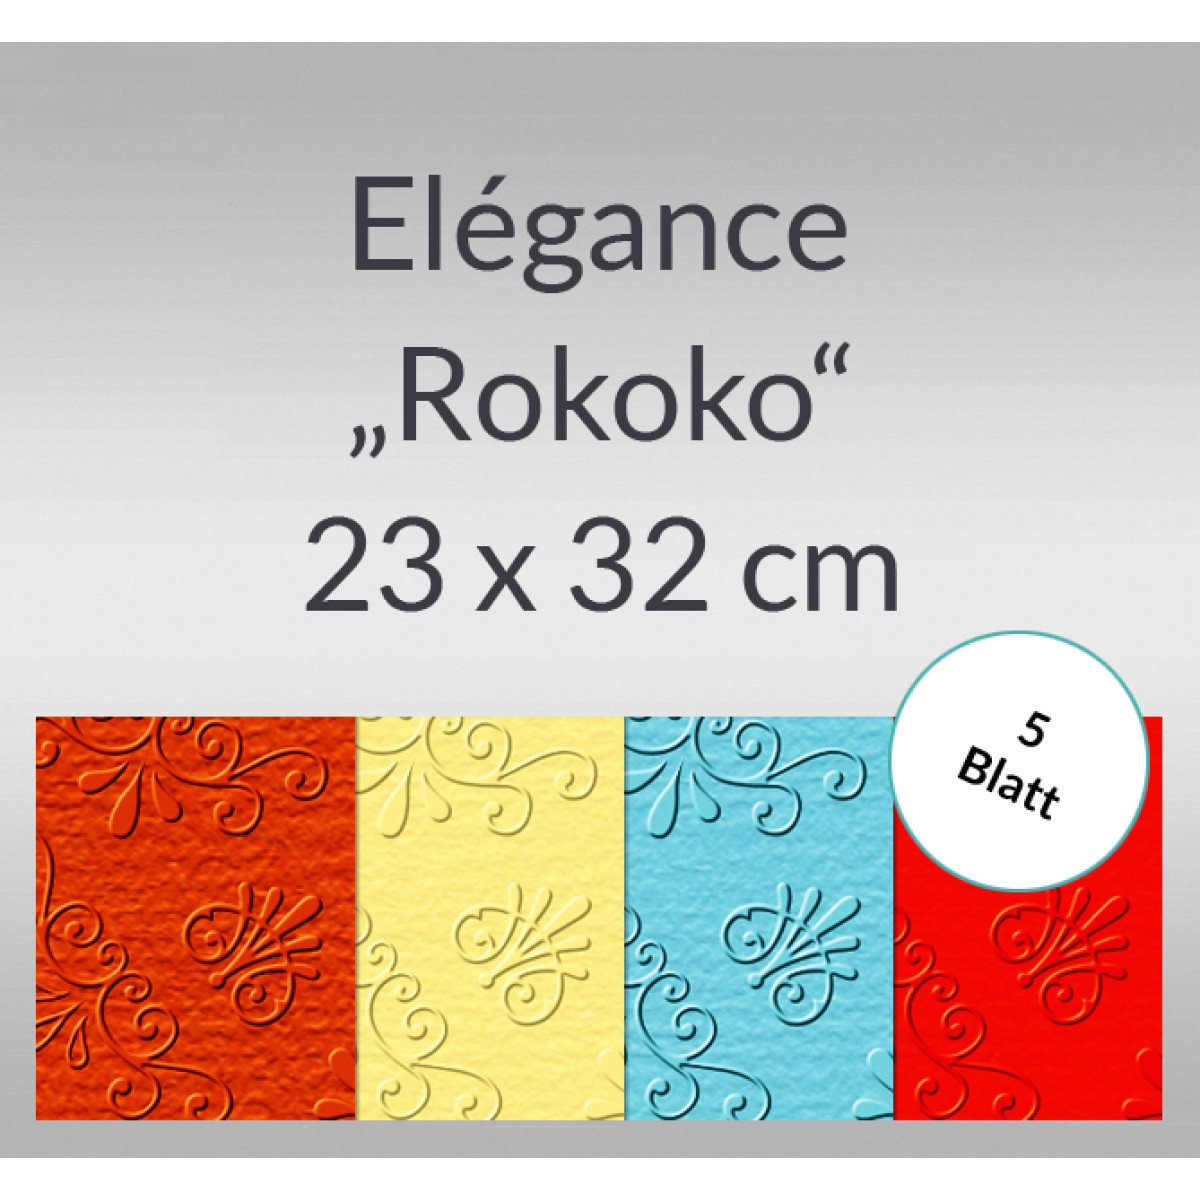 Elegance "Rokoko" 220 g/qm 23 x 32 cm - 5 Blatt